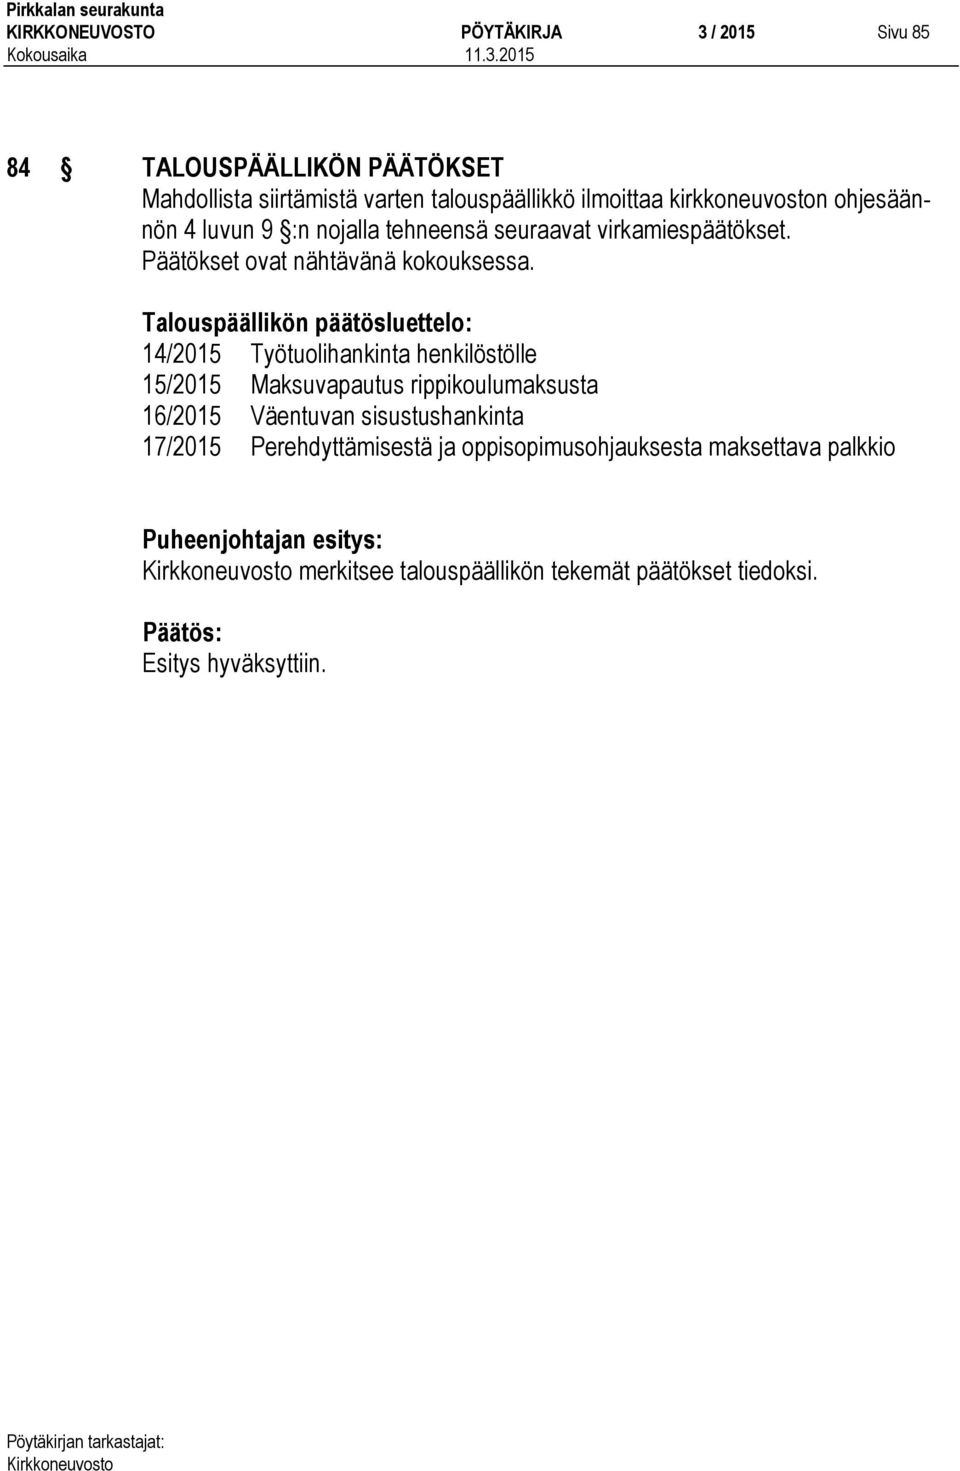 Talouspäällikön päätösluettelo: 14/2015 Työtuolihankinta henkilöstölle 15/2015 Maksuvapautus rippikoulumaksusta 16/2015 Väentuvan